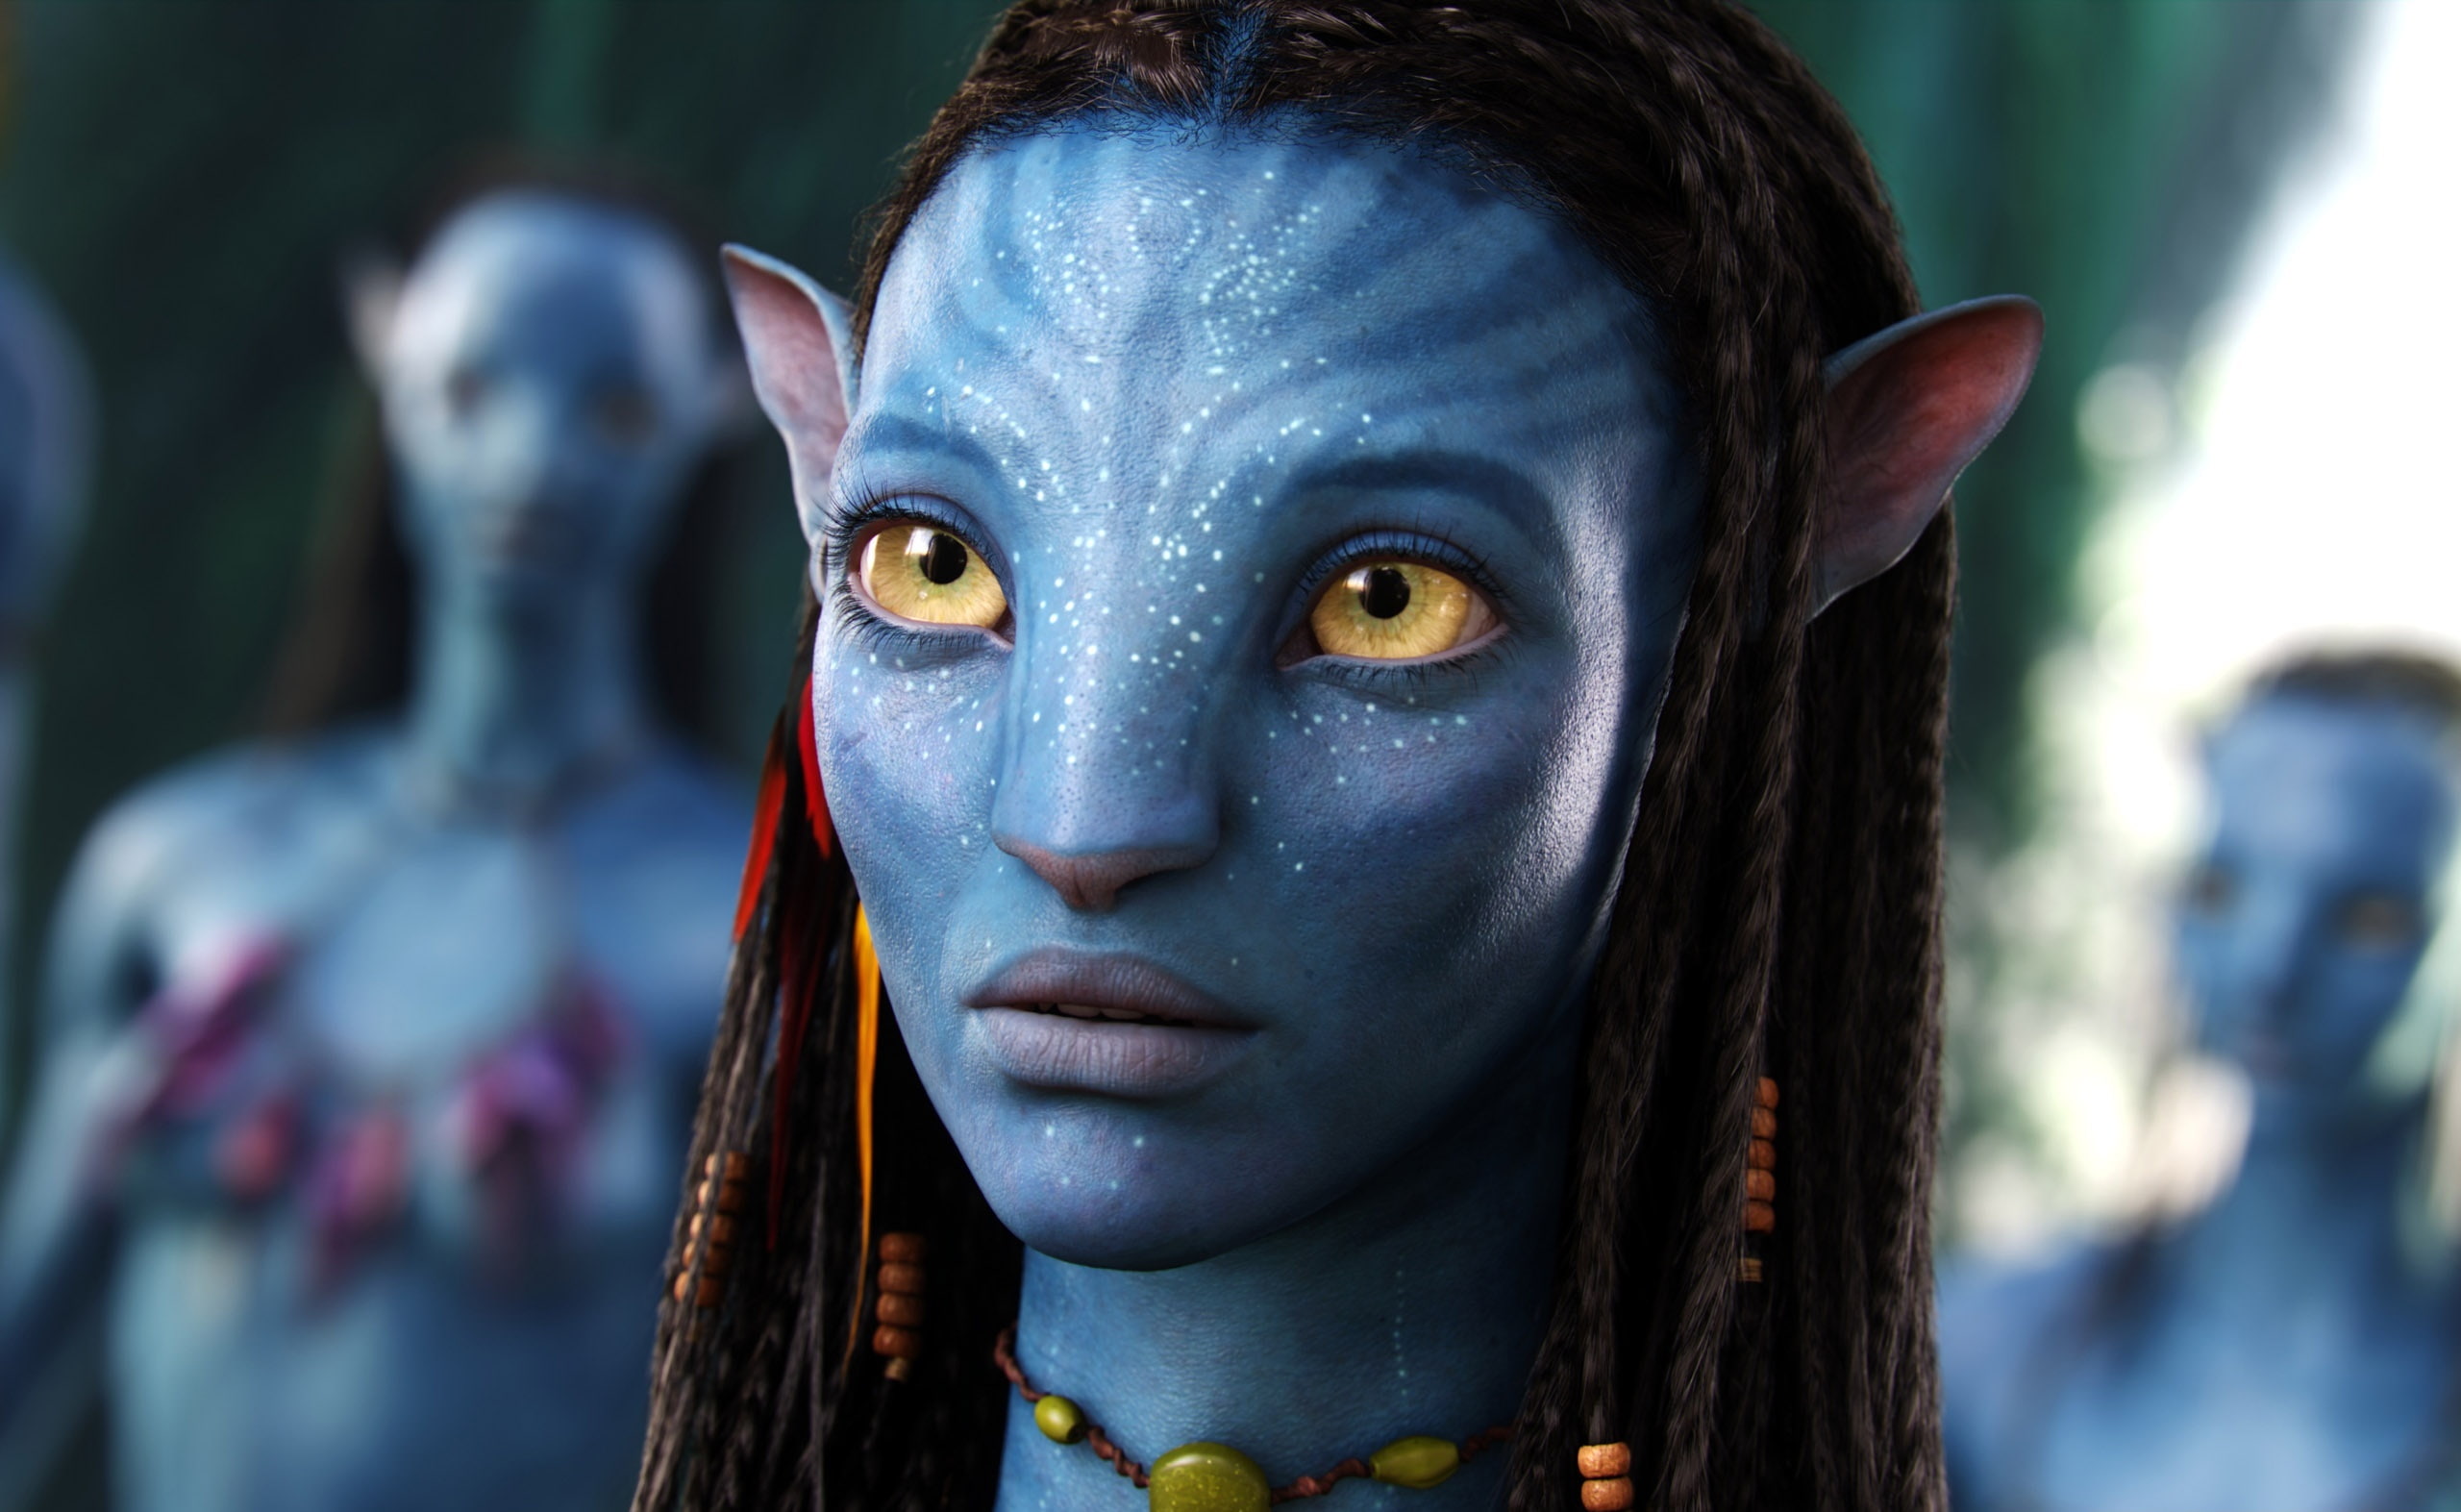 Neytiri Avatar Movie, Avatar character, Movies, portrait, headshot